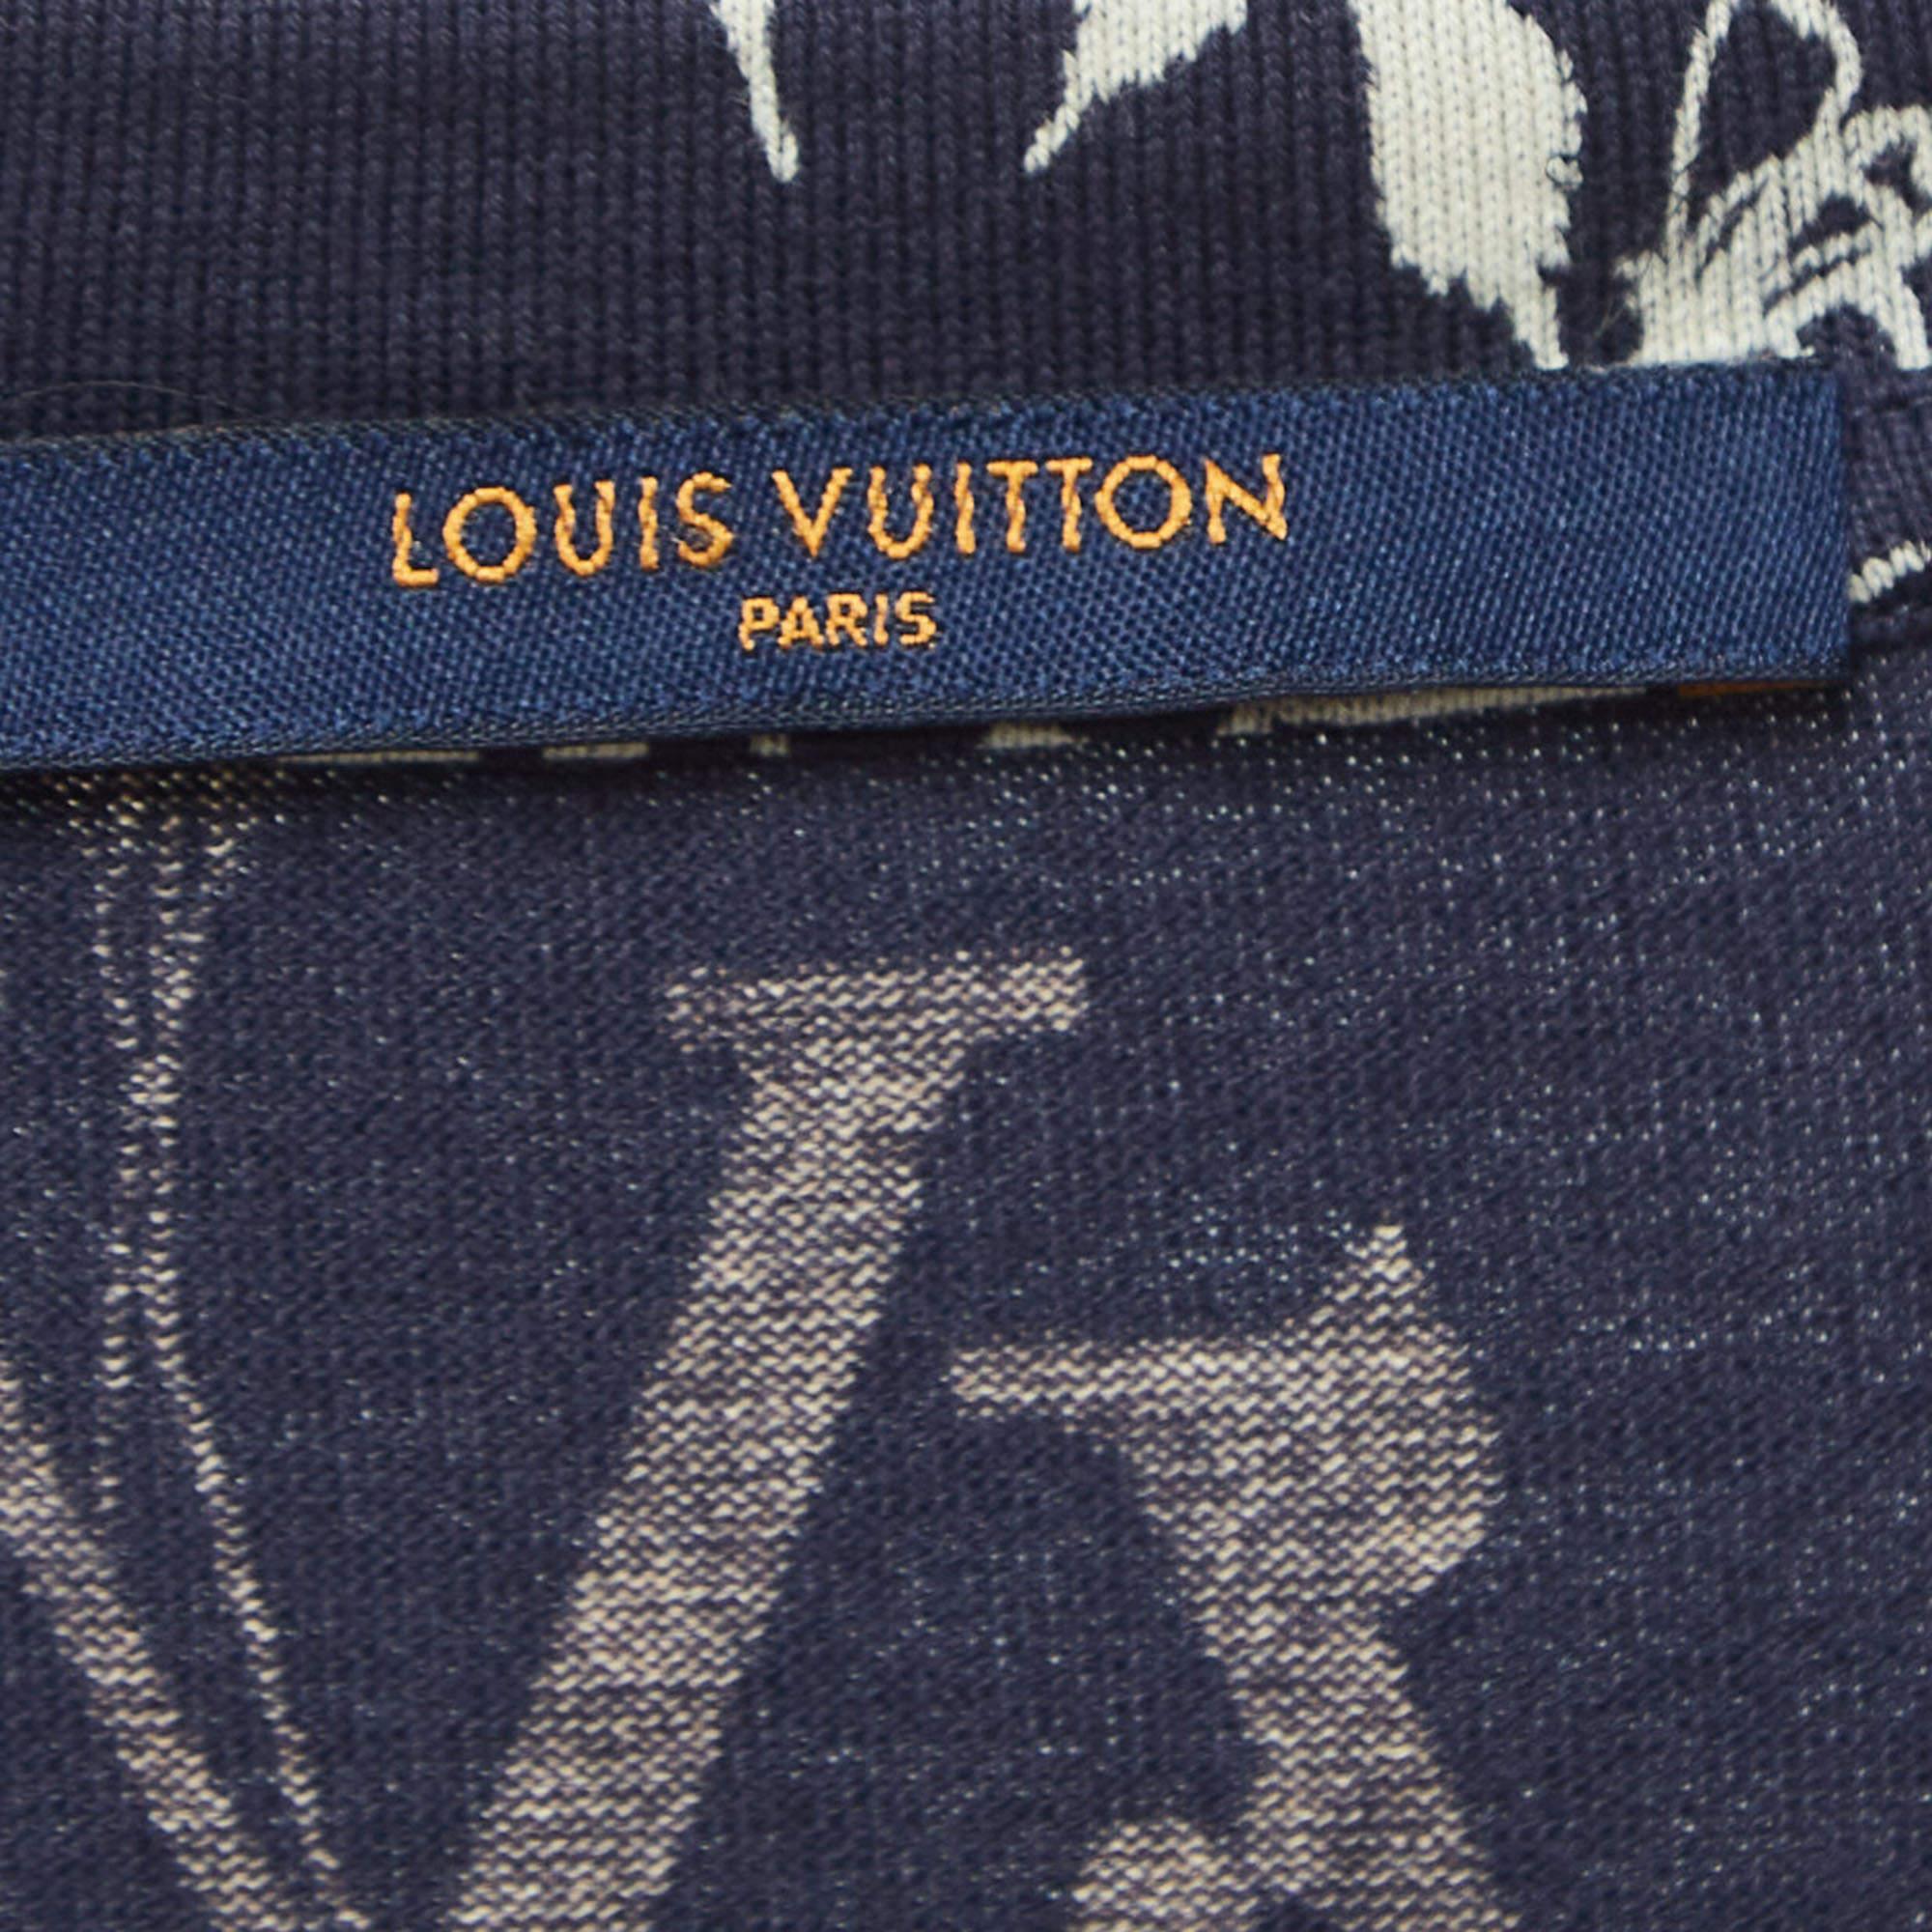 Louis Vuitton Navy Blue Leaf Discharge Print Cotton T-Shirt XL 1